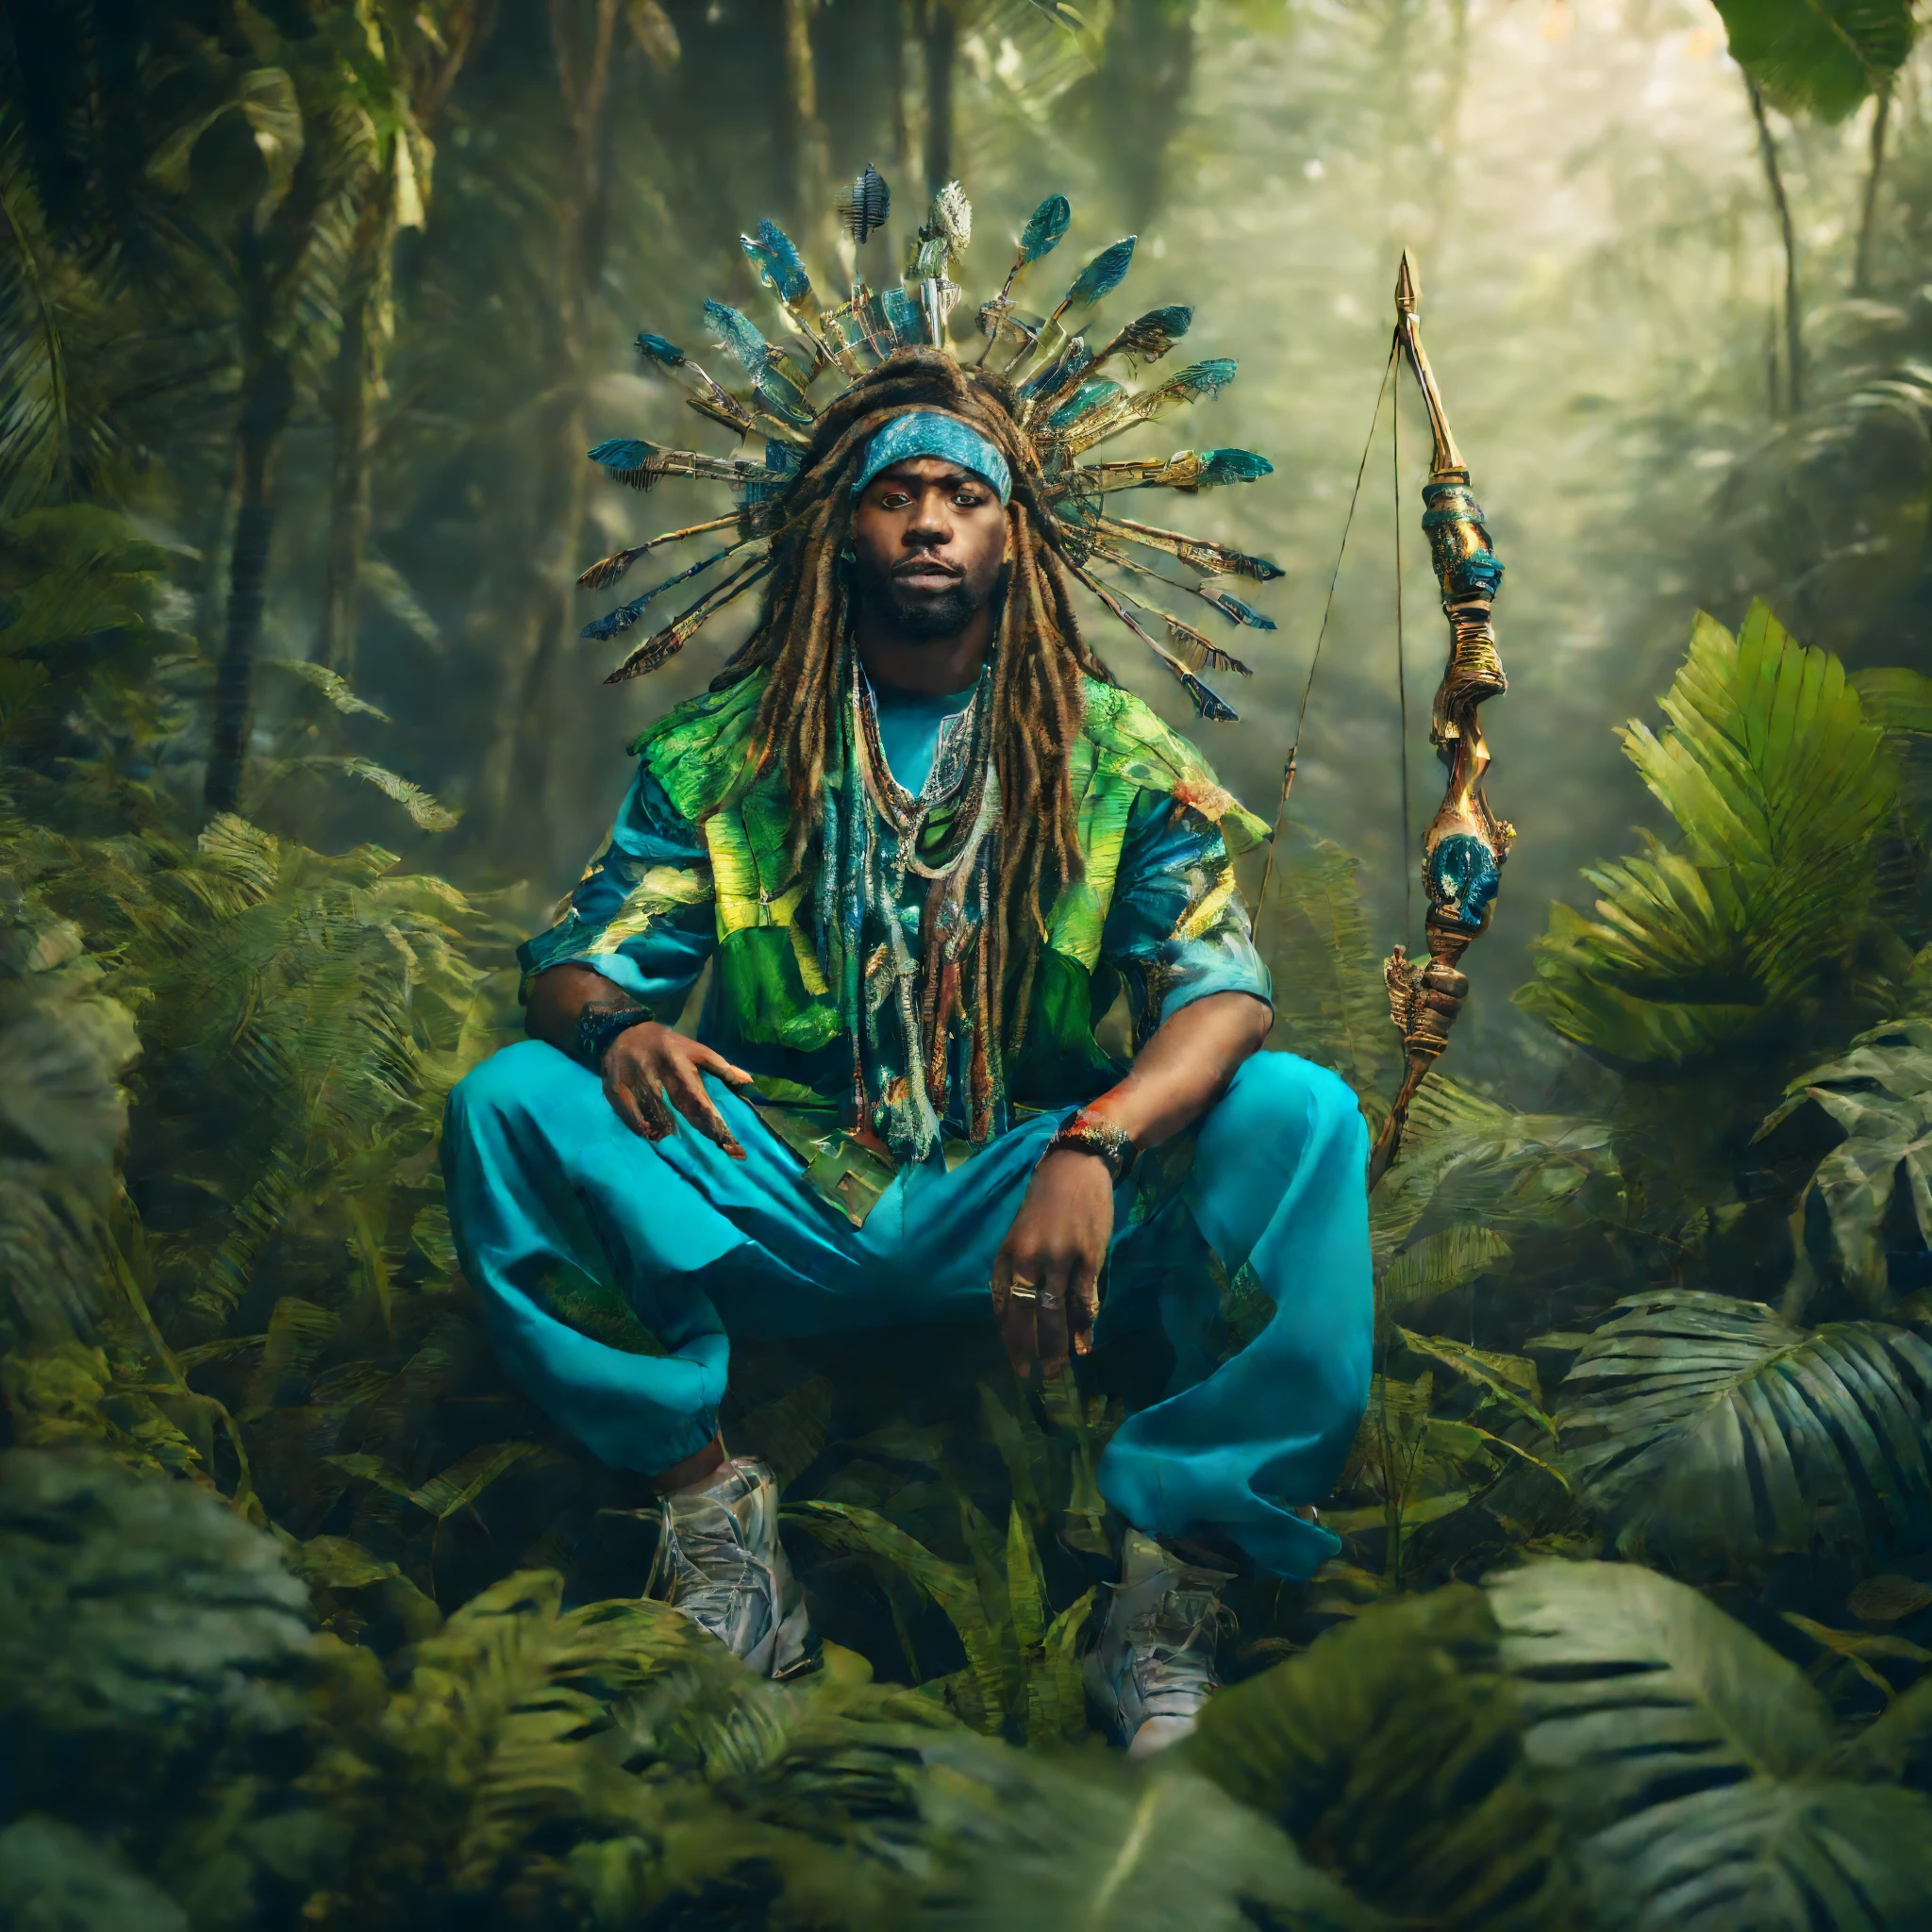 Hip-Hop-Kleidung, Ein Hip-Hop-Gott mit Dreadlocks trägt grüne und blaue Hip-Hop-Kleidung im Dschungel mit Tieren und hält einen futuristischen Pfeil und Bogen, schwarzer Mann, Große Lautsprecher im Dschungel wie eine Show, Rapper-Kleidung, Afrofuturismus Mode, Ultra-Qualität, 8K, komplizierte Details, schönes Gesicht, Gott Hunter, Filmszene und Licht, Hip-Hop-Stil